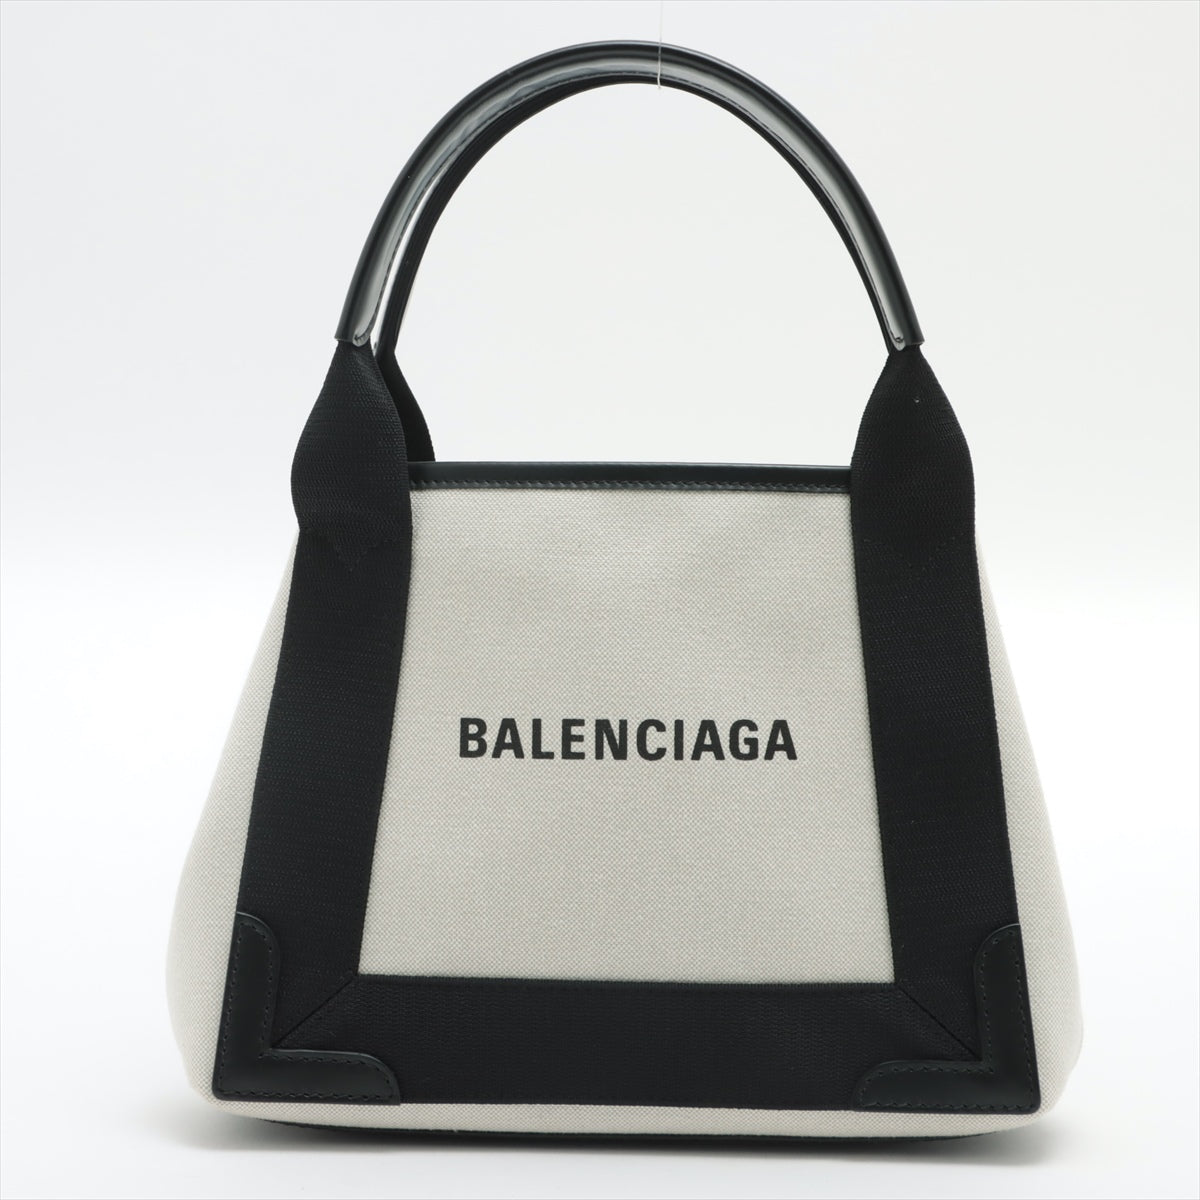 Balenciaga Bags & Handbags for Women sale - discounted price | FASHIOLA  INDIA